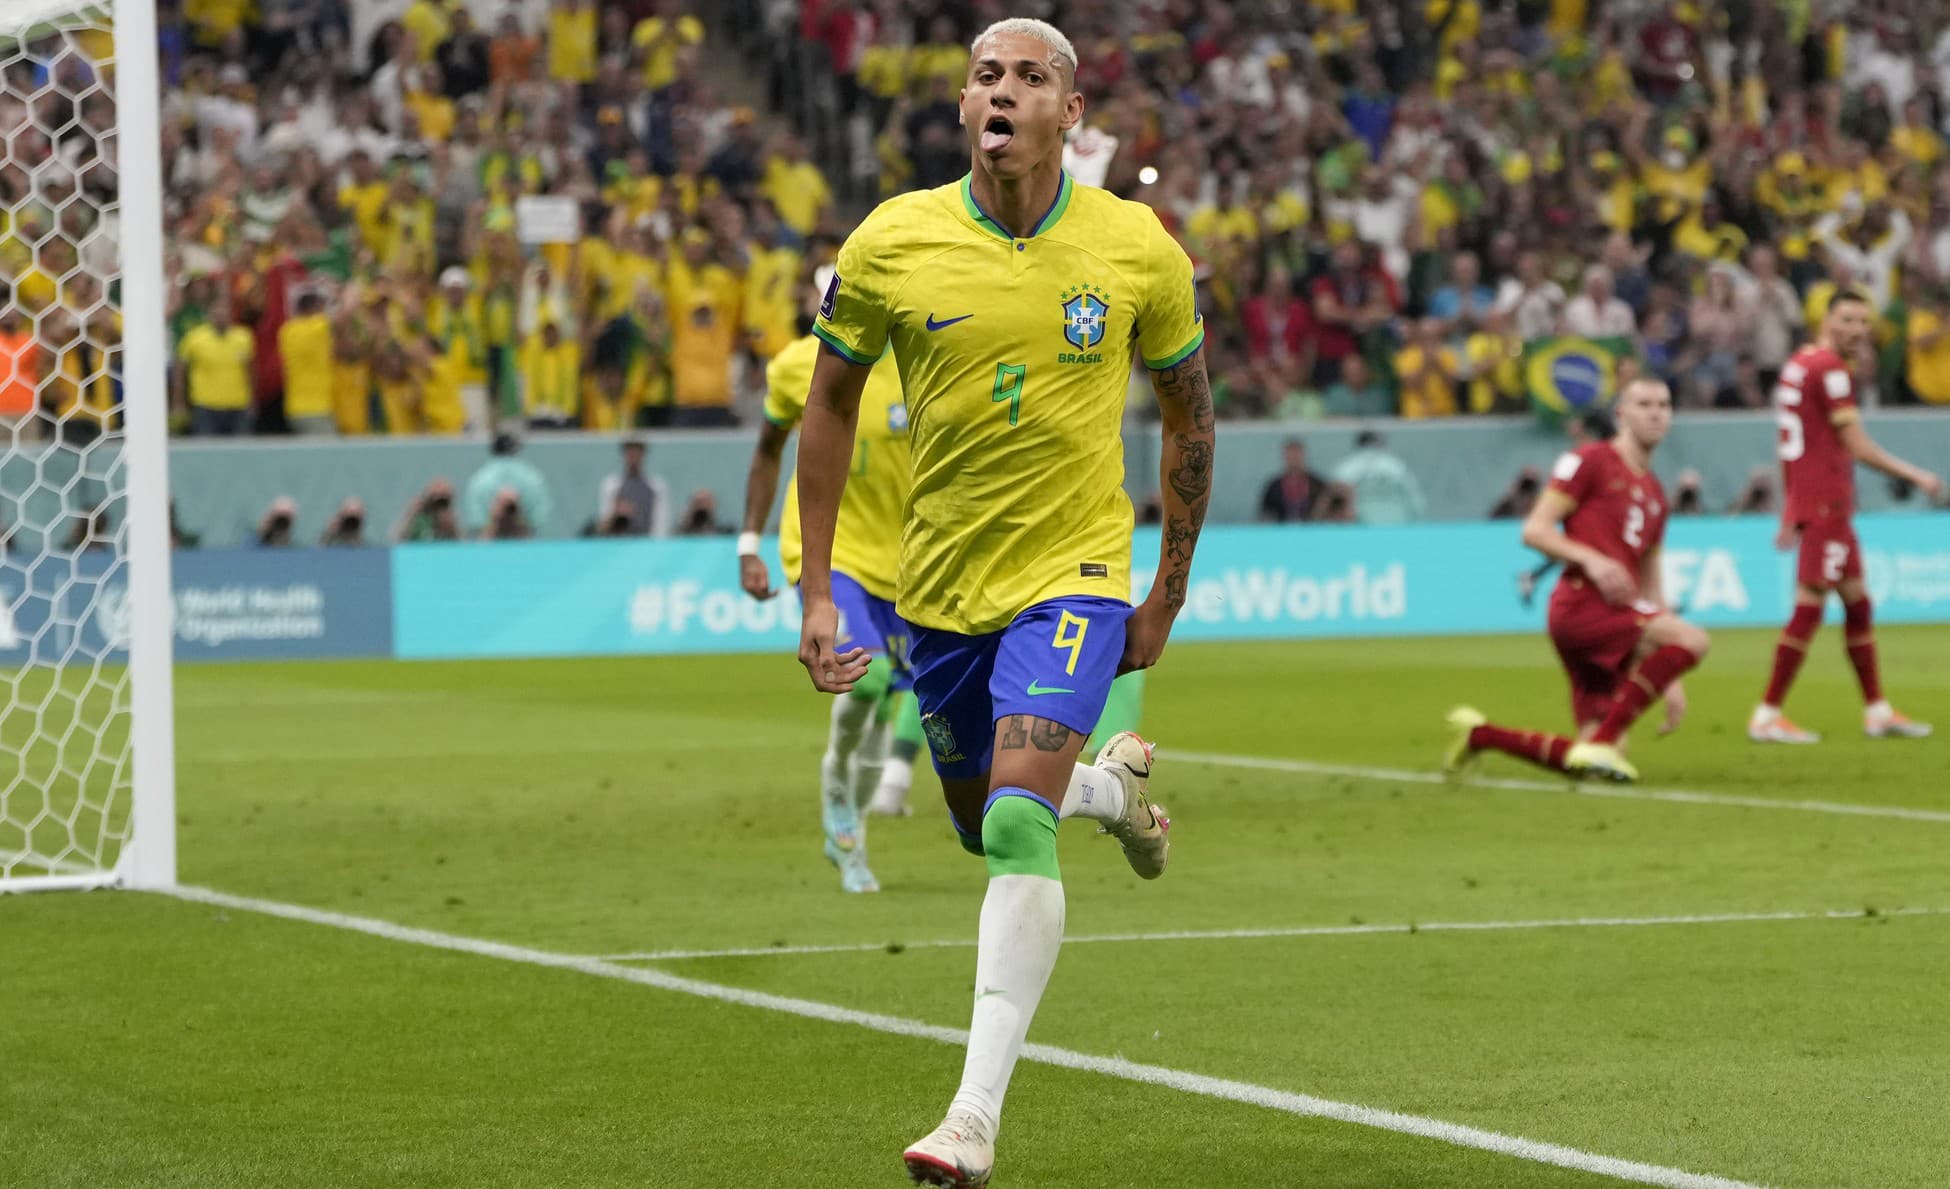 Favorizovaná Brazília si poradila so Srbskom: Neymar musel striedať